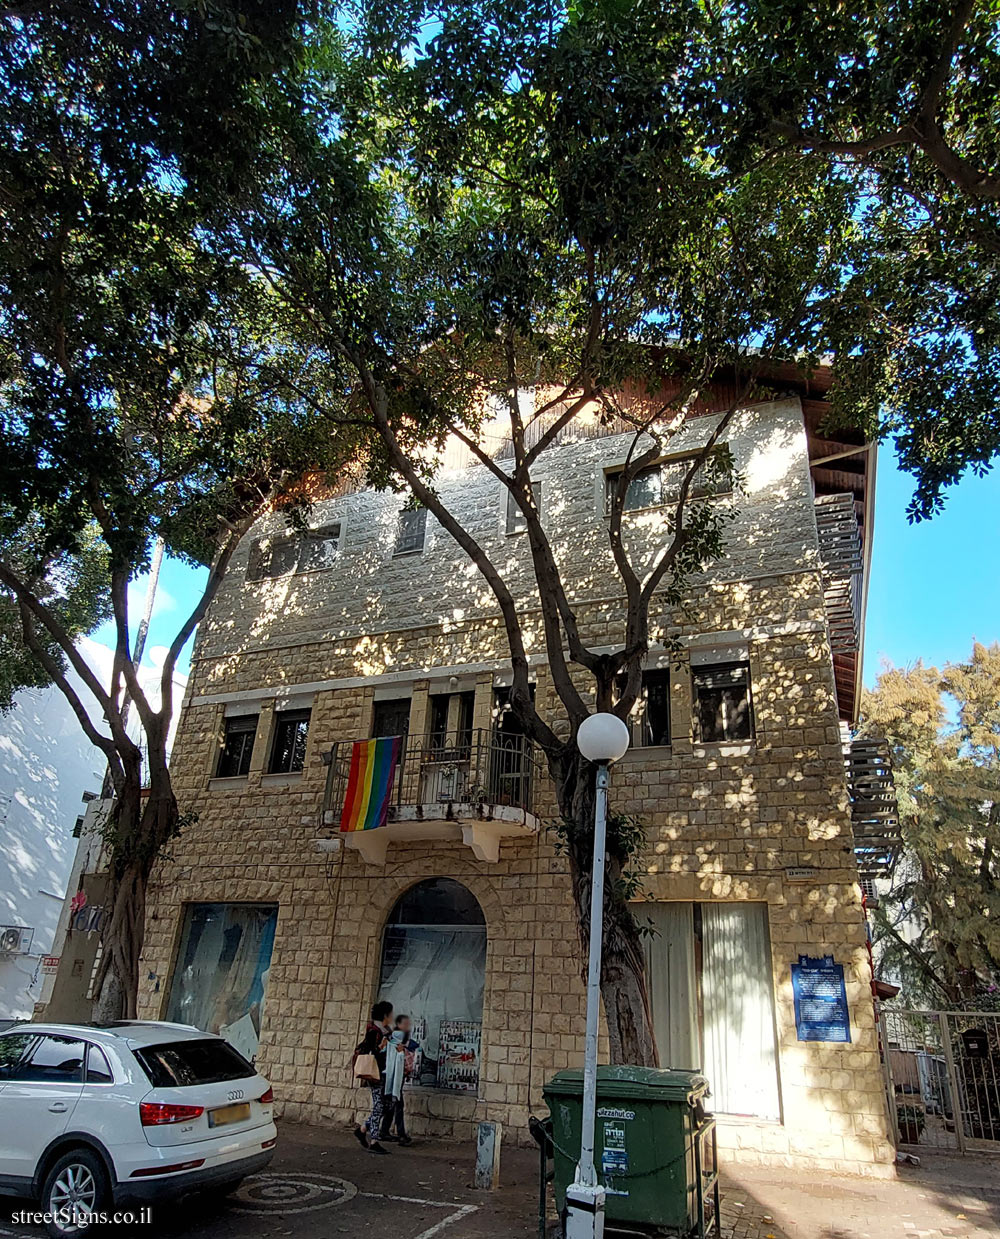 Haifa - Heritage Sites in Israel - "Even-Pina" Gymnasium - Nordau St 23, Haifa, Israel